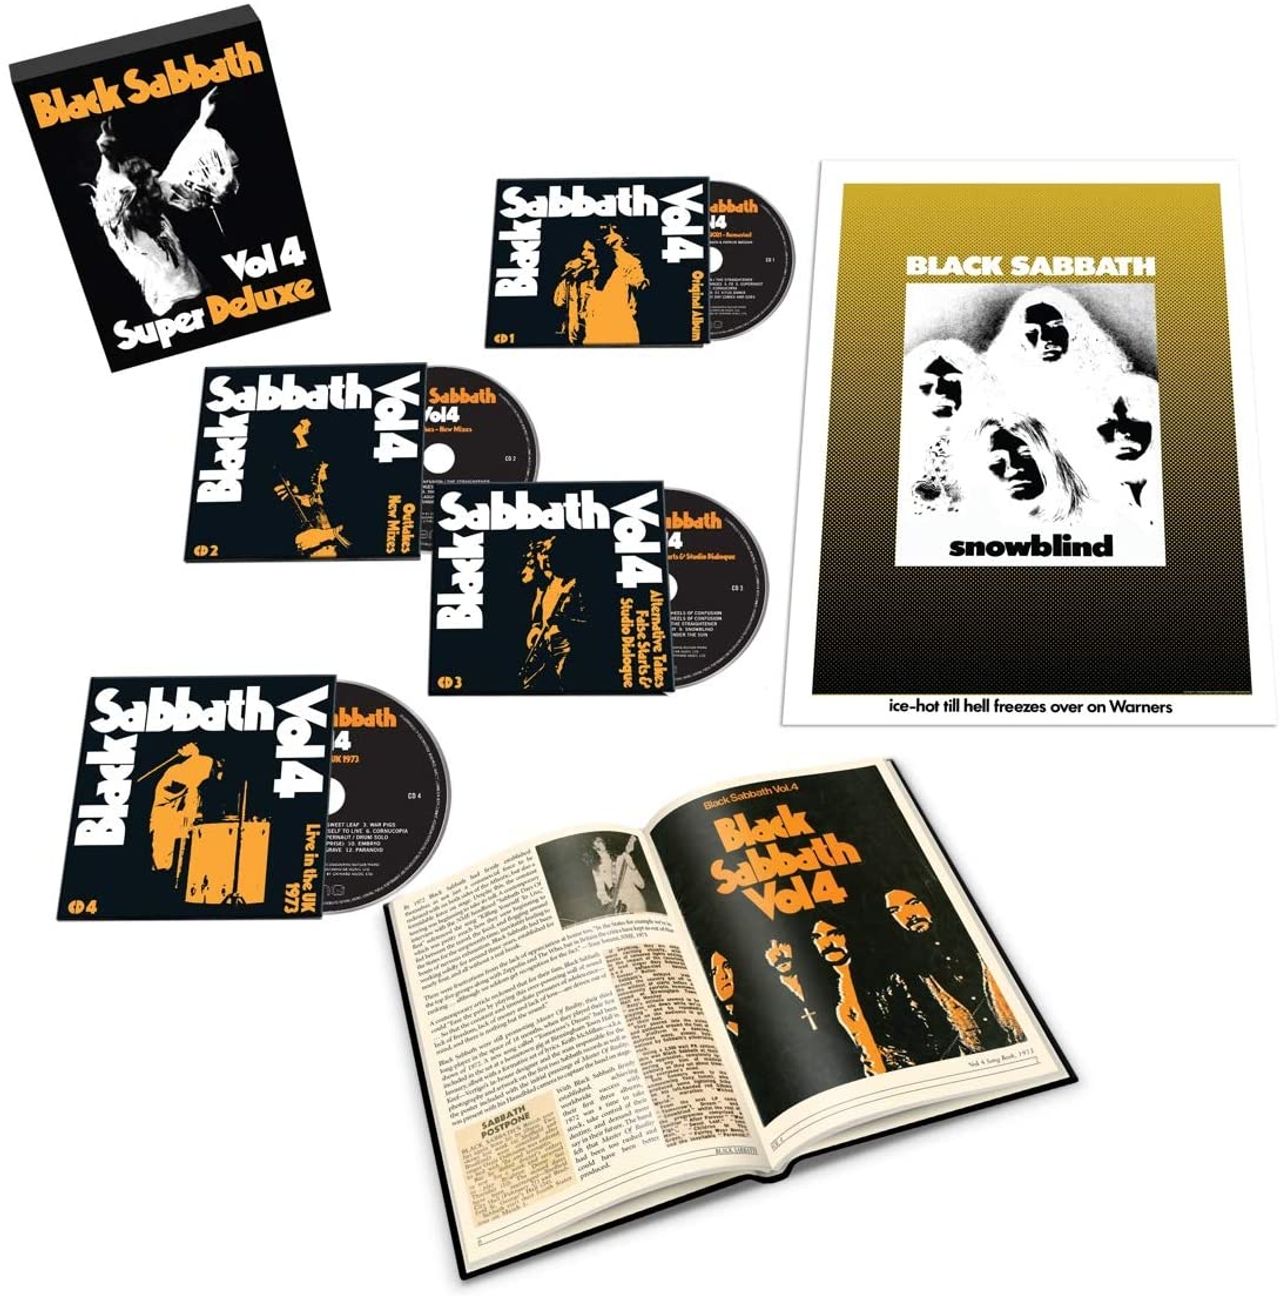 Black Sabbath Vol. 4 - Super Deluxe Edition (4CD) - Sealed UK Cd album —  RareVinyl.com